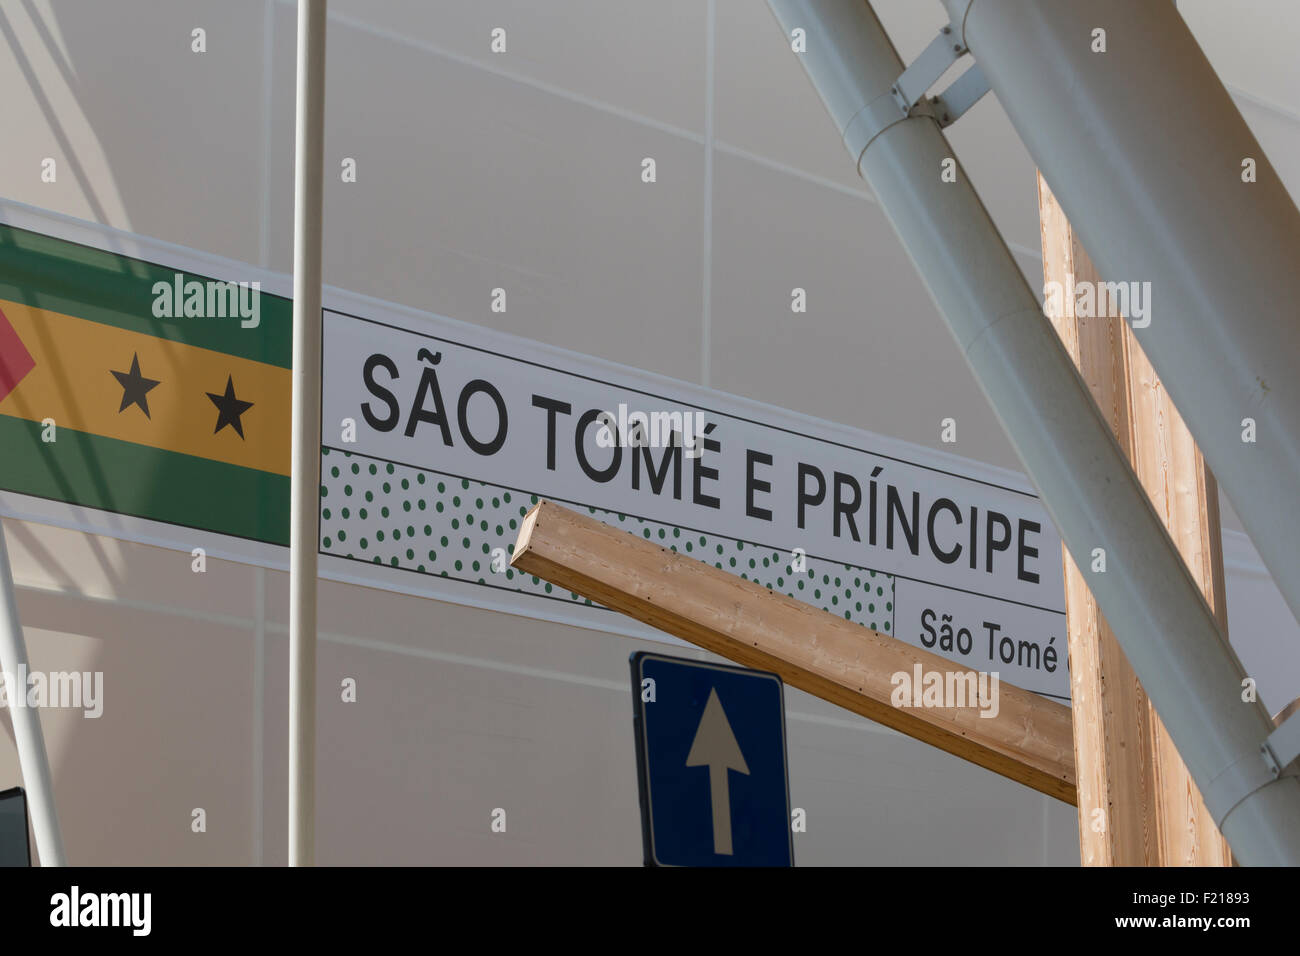 Mailand, Italien, 12. August 2015: Detail des São Tomé e Principe Pavillons auf der Messe Expo 2015 Italien. Stockfoto